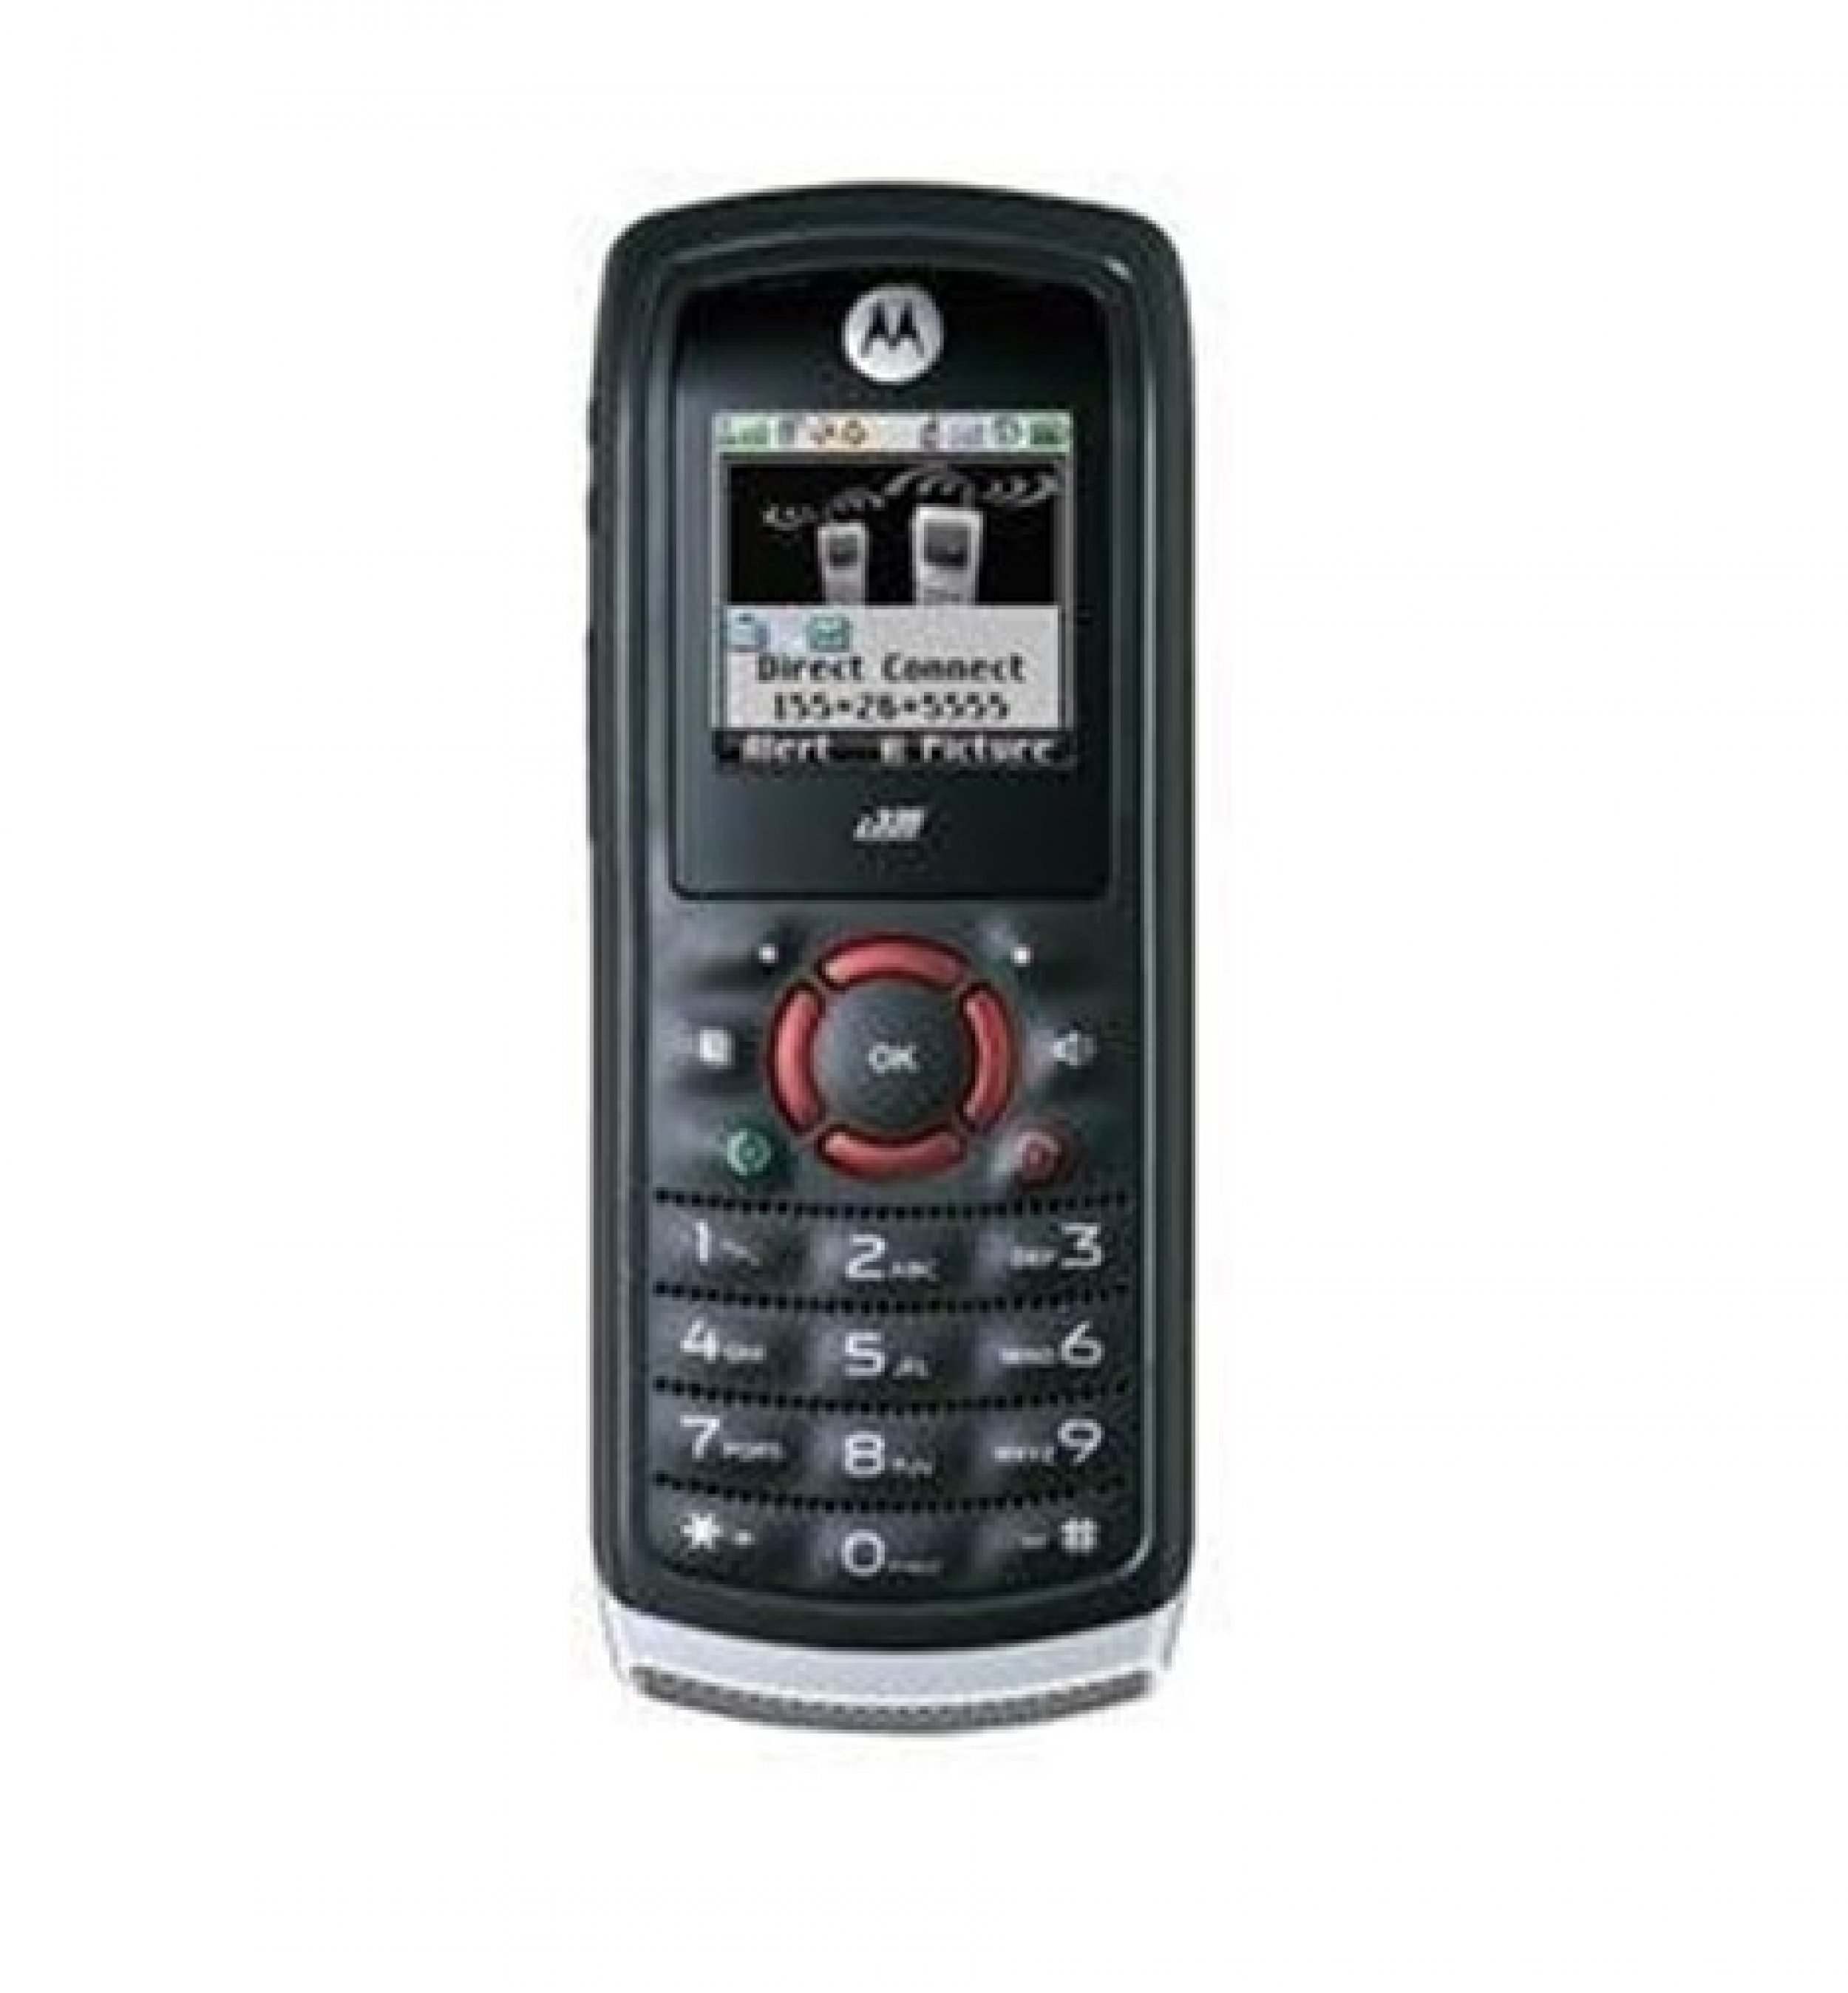 Motorola i335 